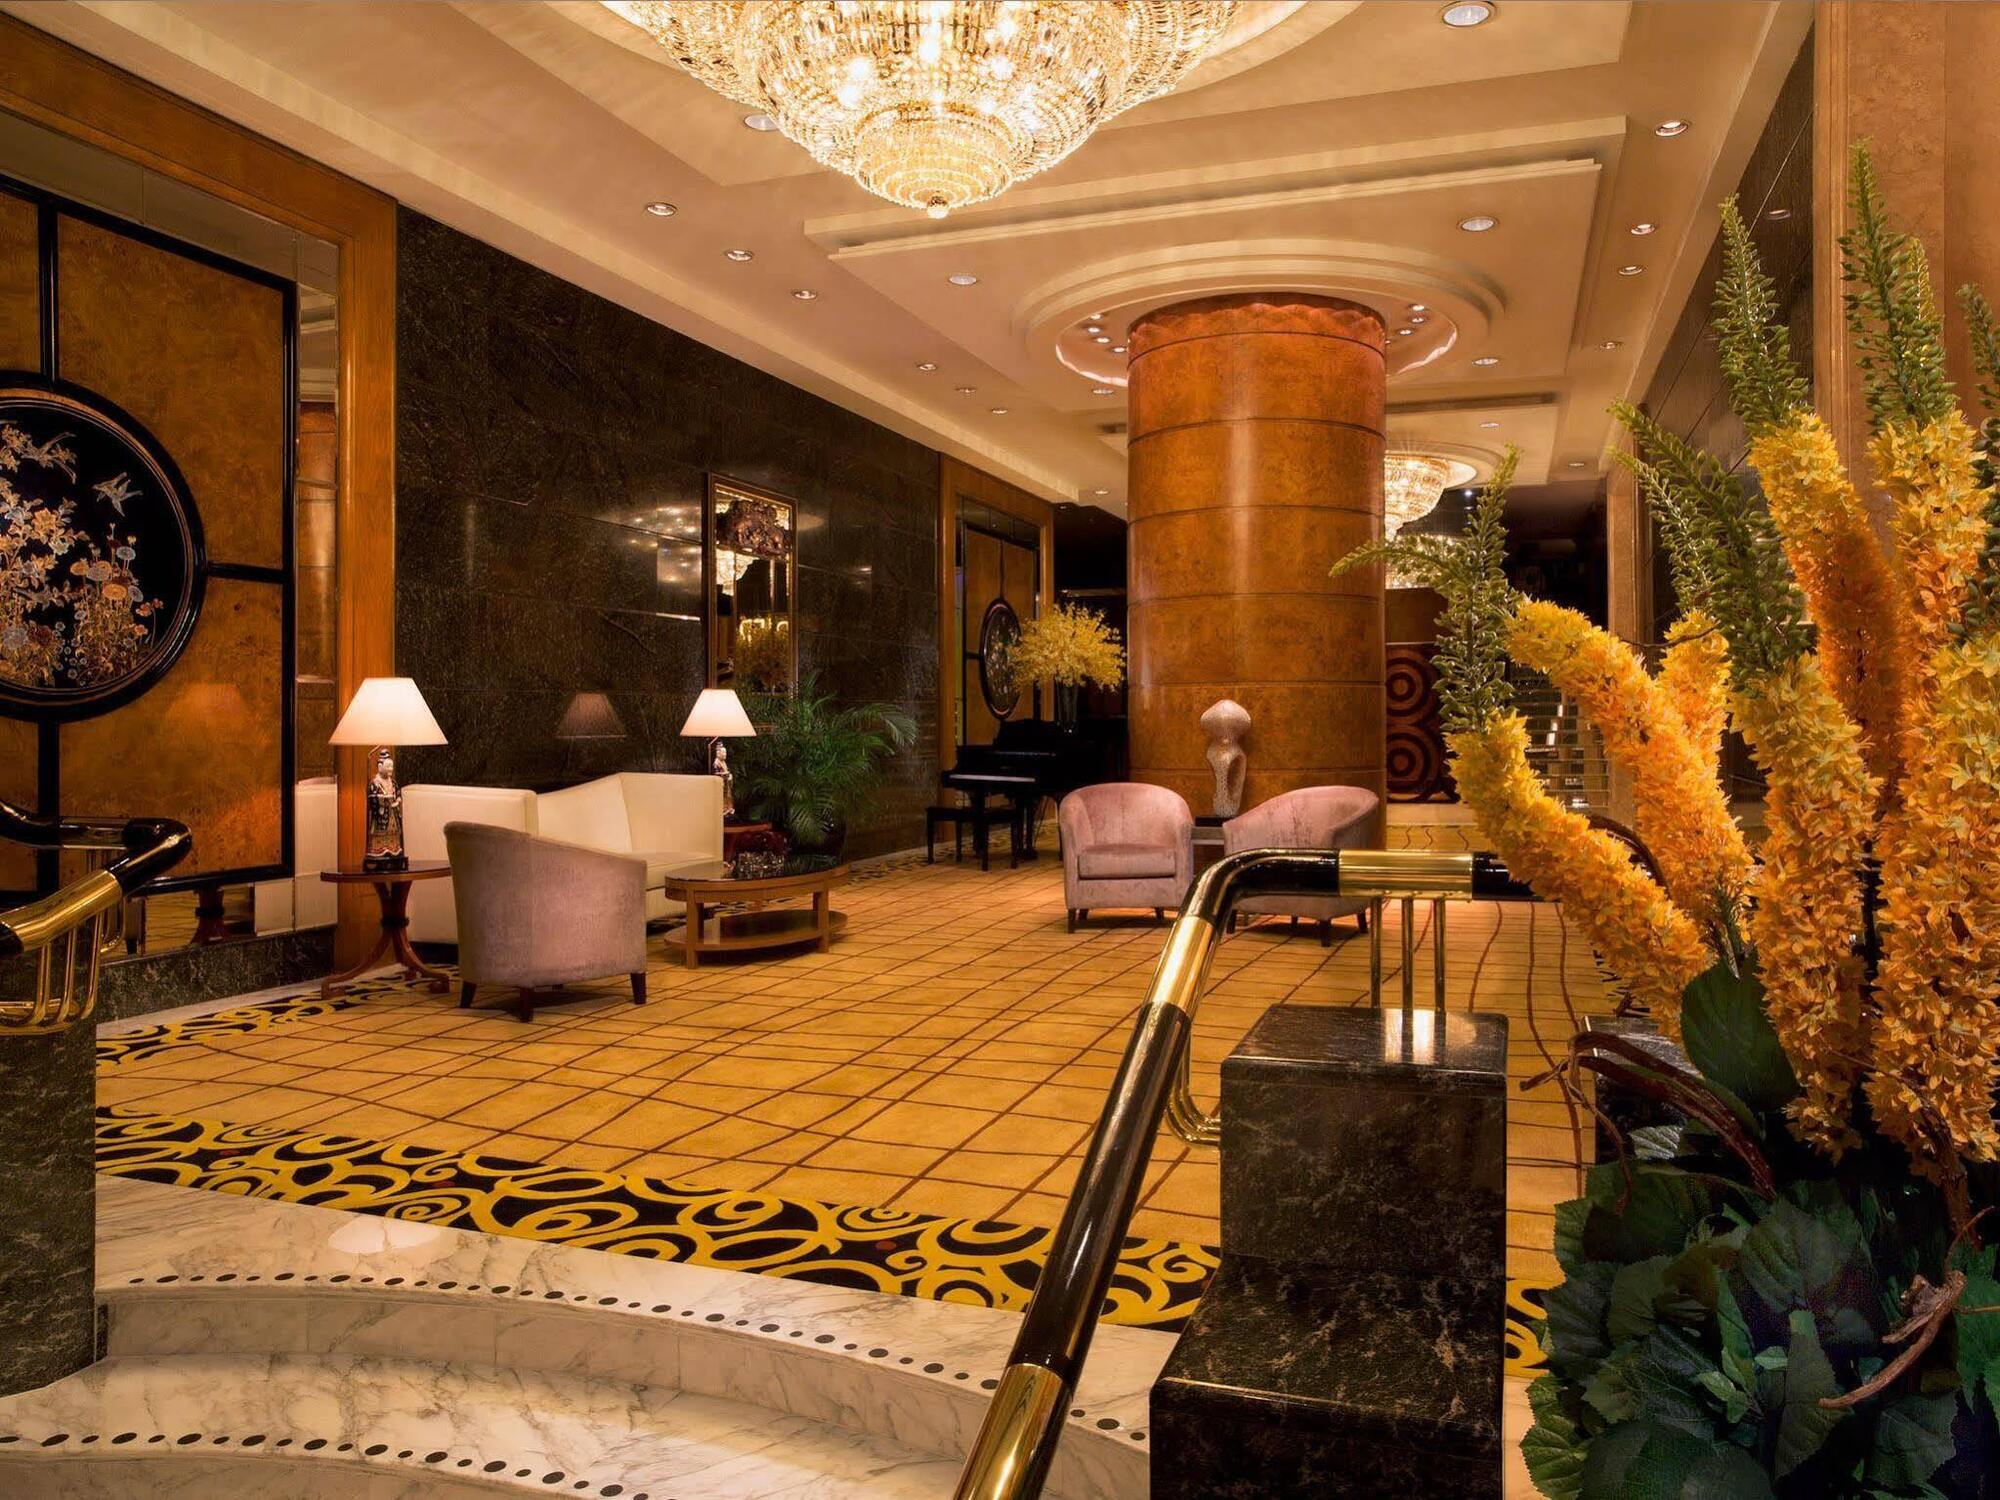 The Royal Pacific Hotel & Towers Hong Kong Dış mekan fotoğraf